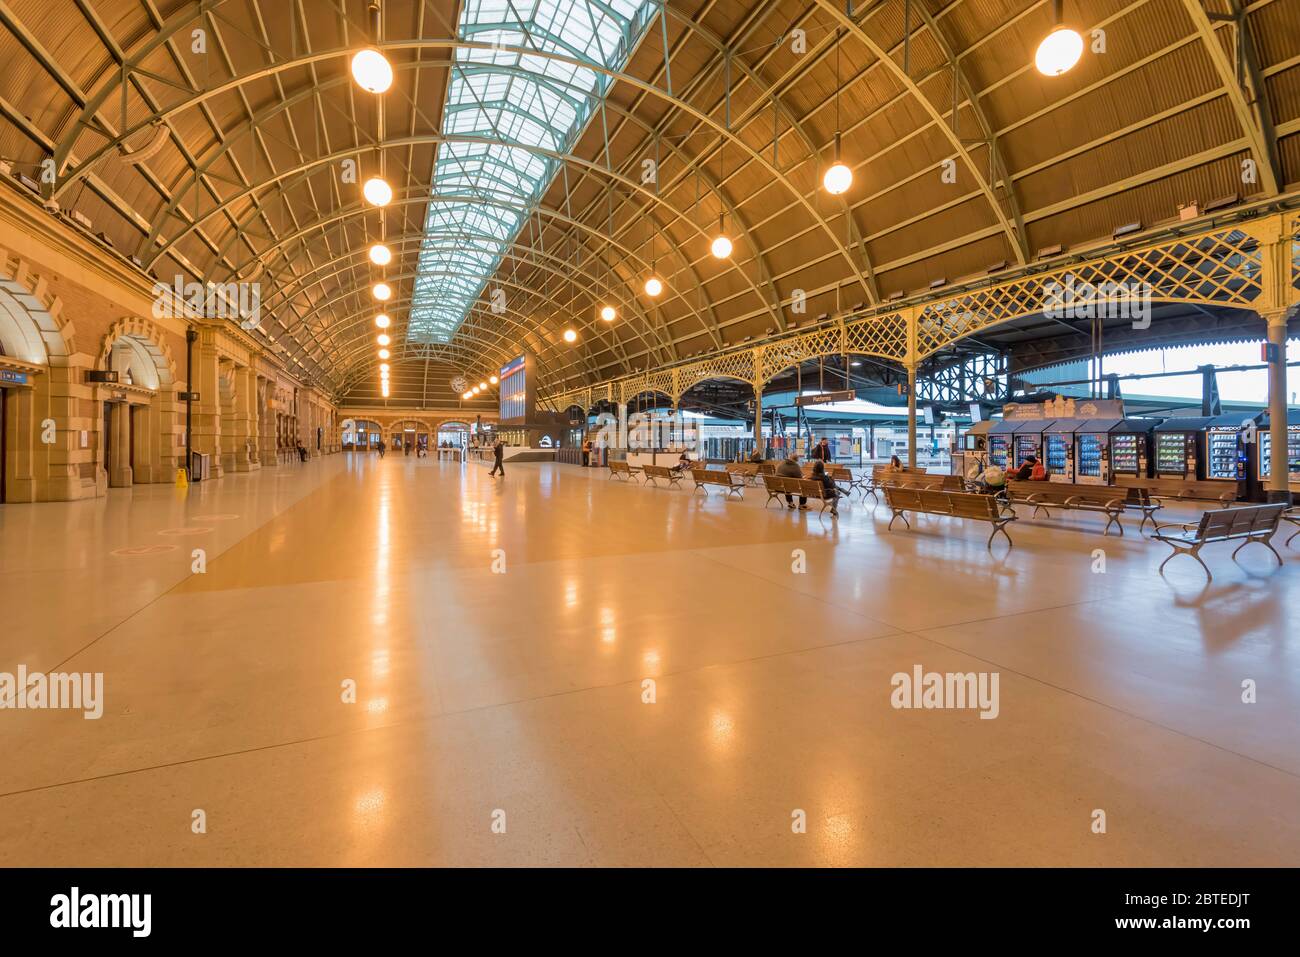 Sydney, Australien Mai 2020: Der normalerweise überfüllte Grand Concourse am Hauptbahnhof erscheint während der Covid-19-Pandemie fast leer Stockfoto